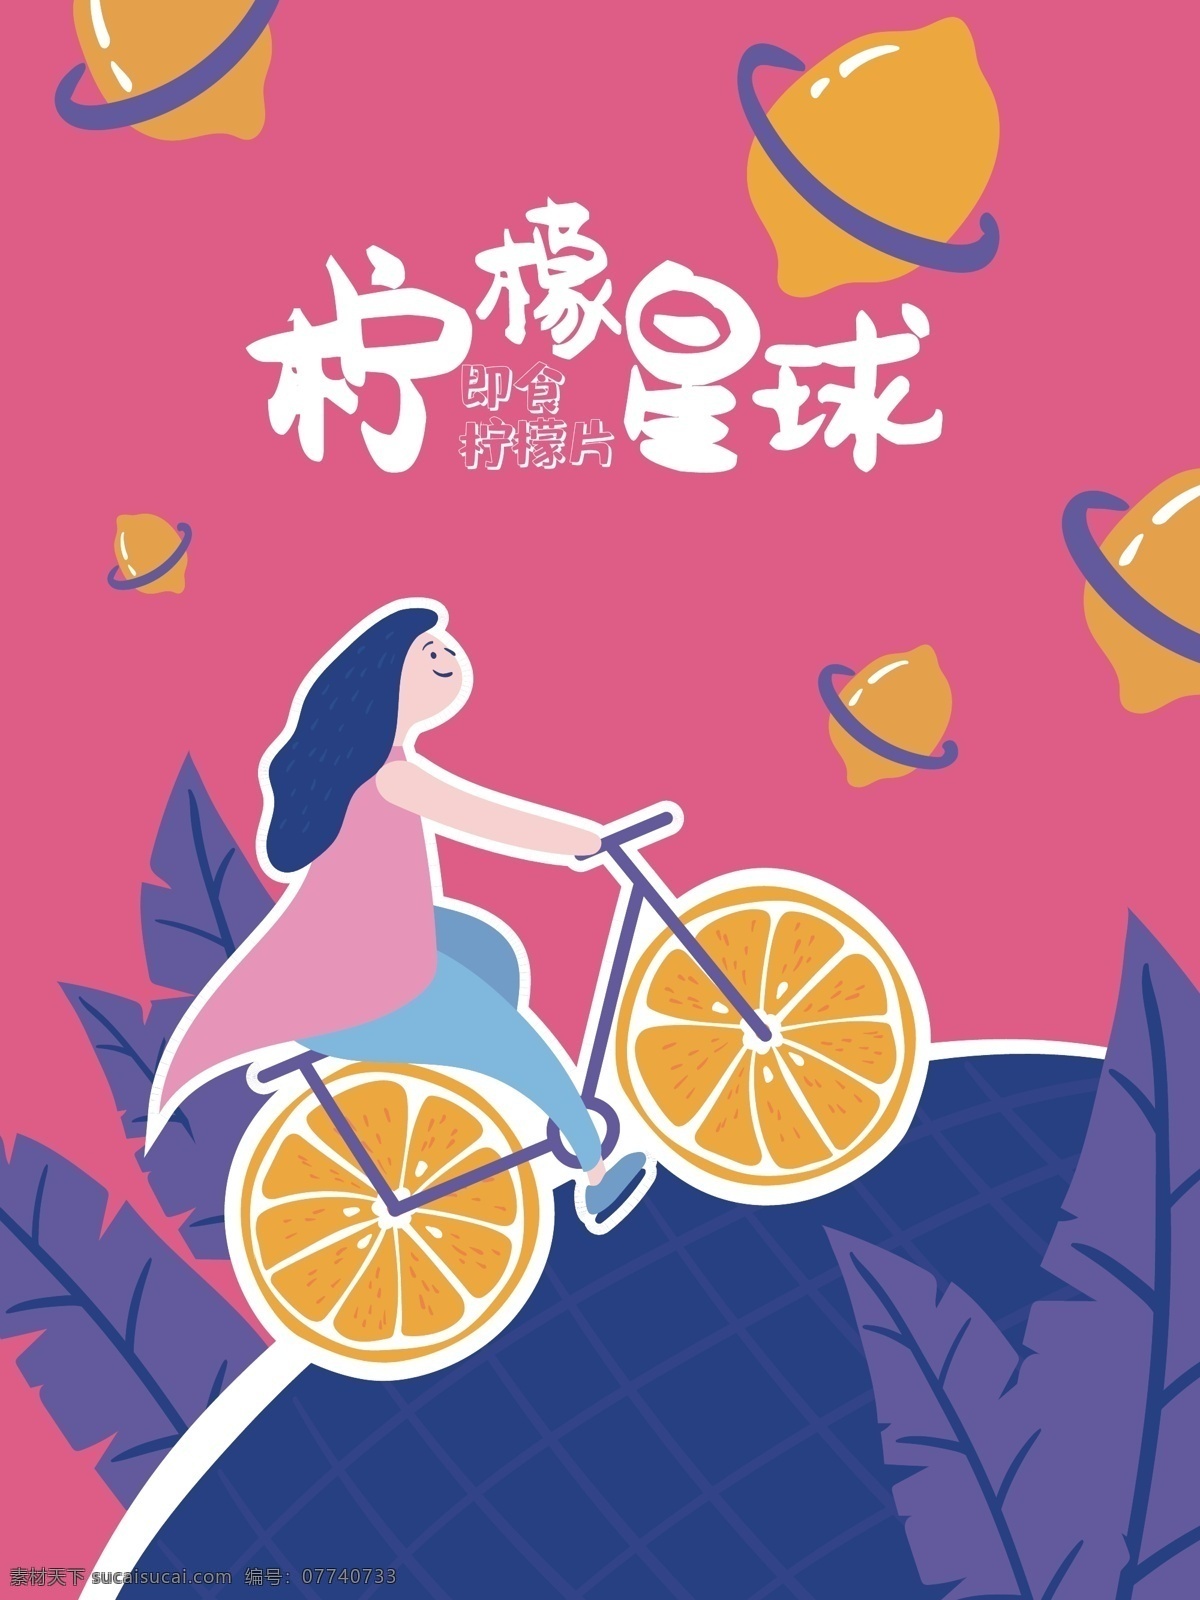 柠檬 星球 干 插画 包装 柠檬干 柠檬片 柠檬干包装 插画包装 矢量 柠檬星球 黄色 玫红 紫色 撞色 叶子 单车 女孩